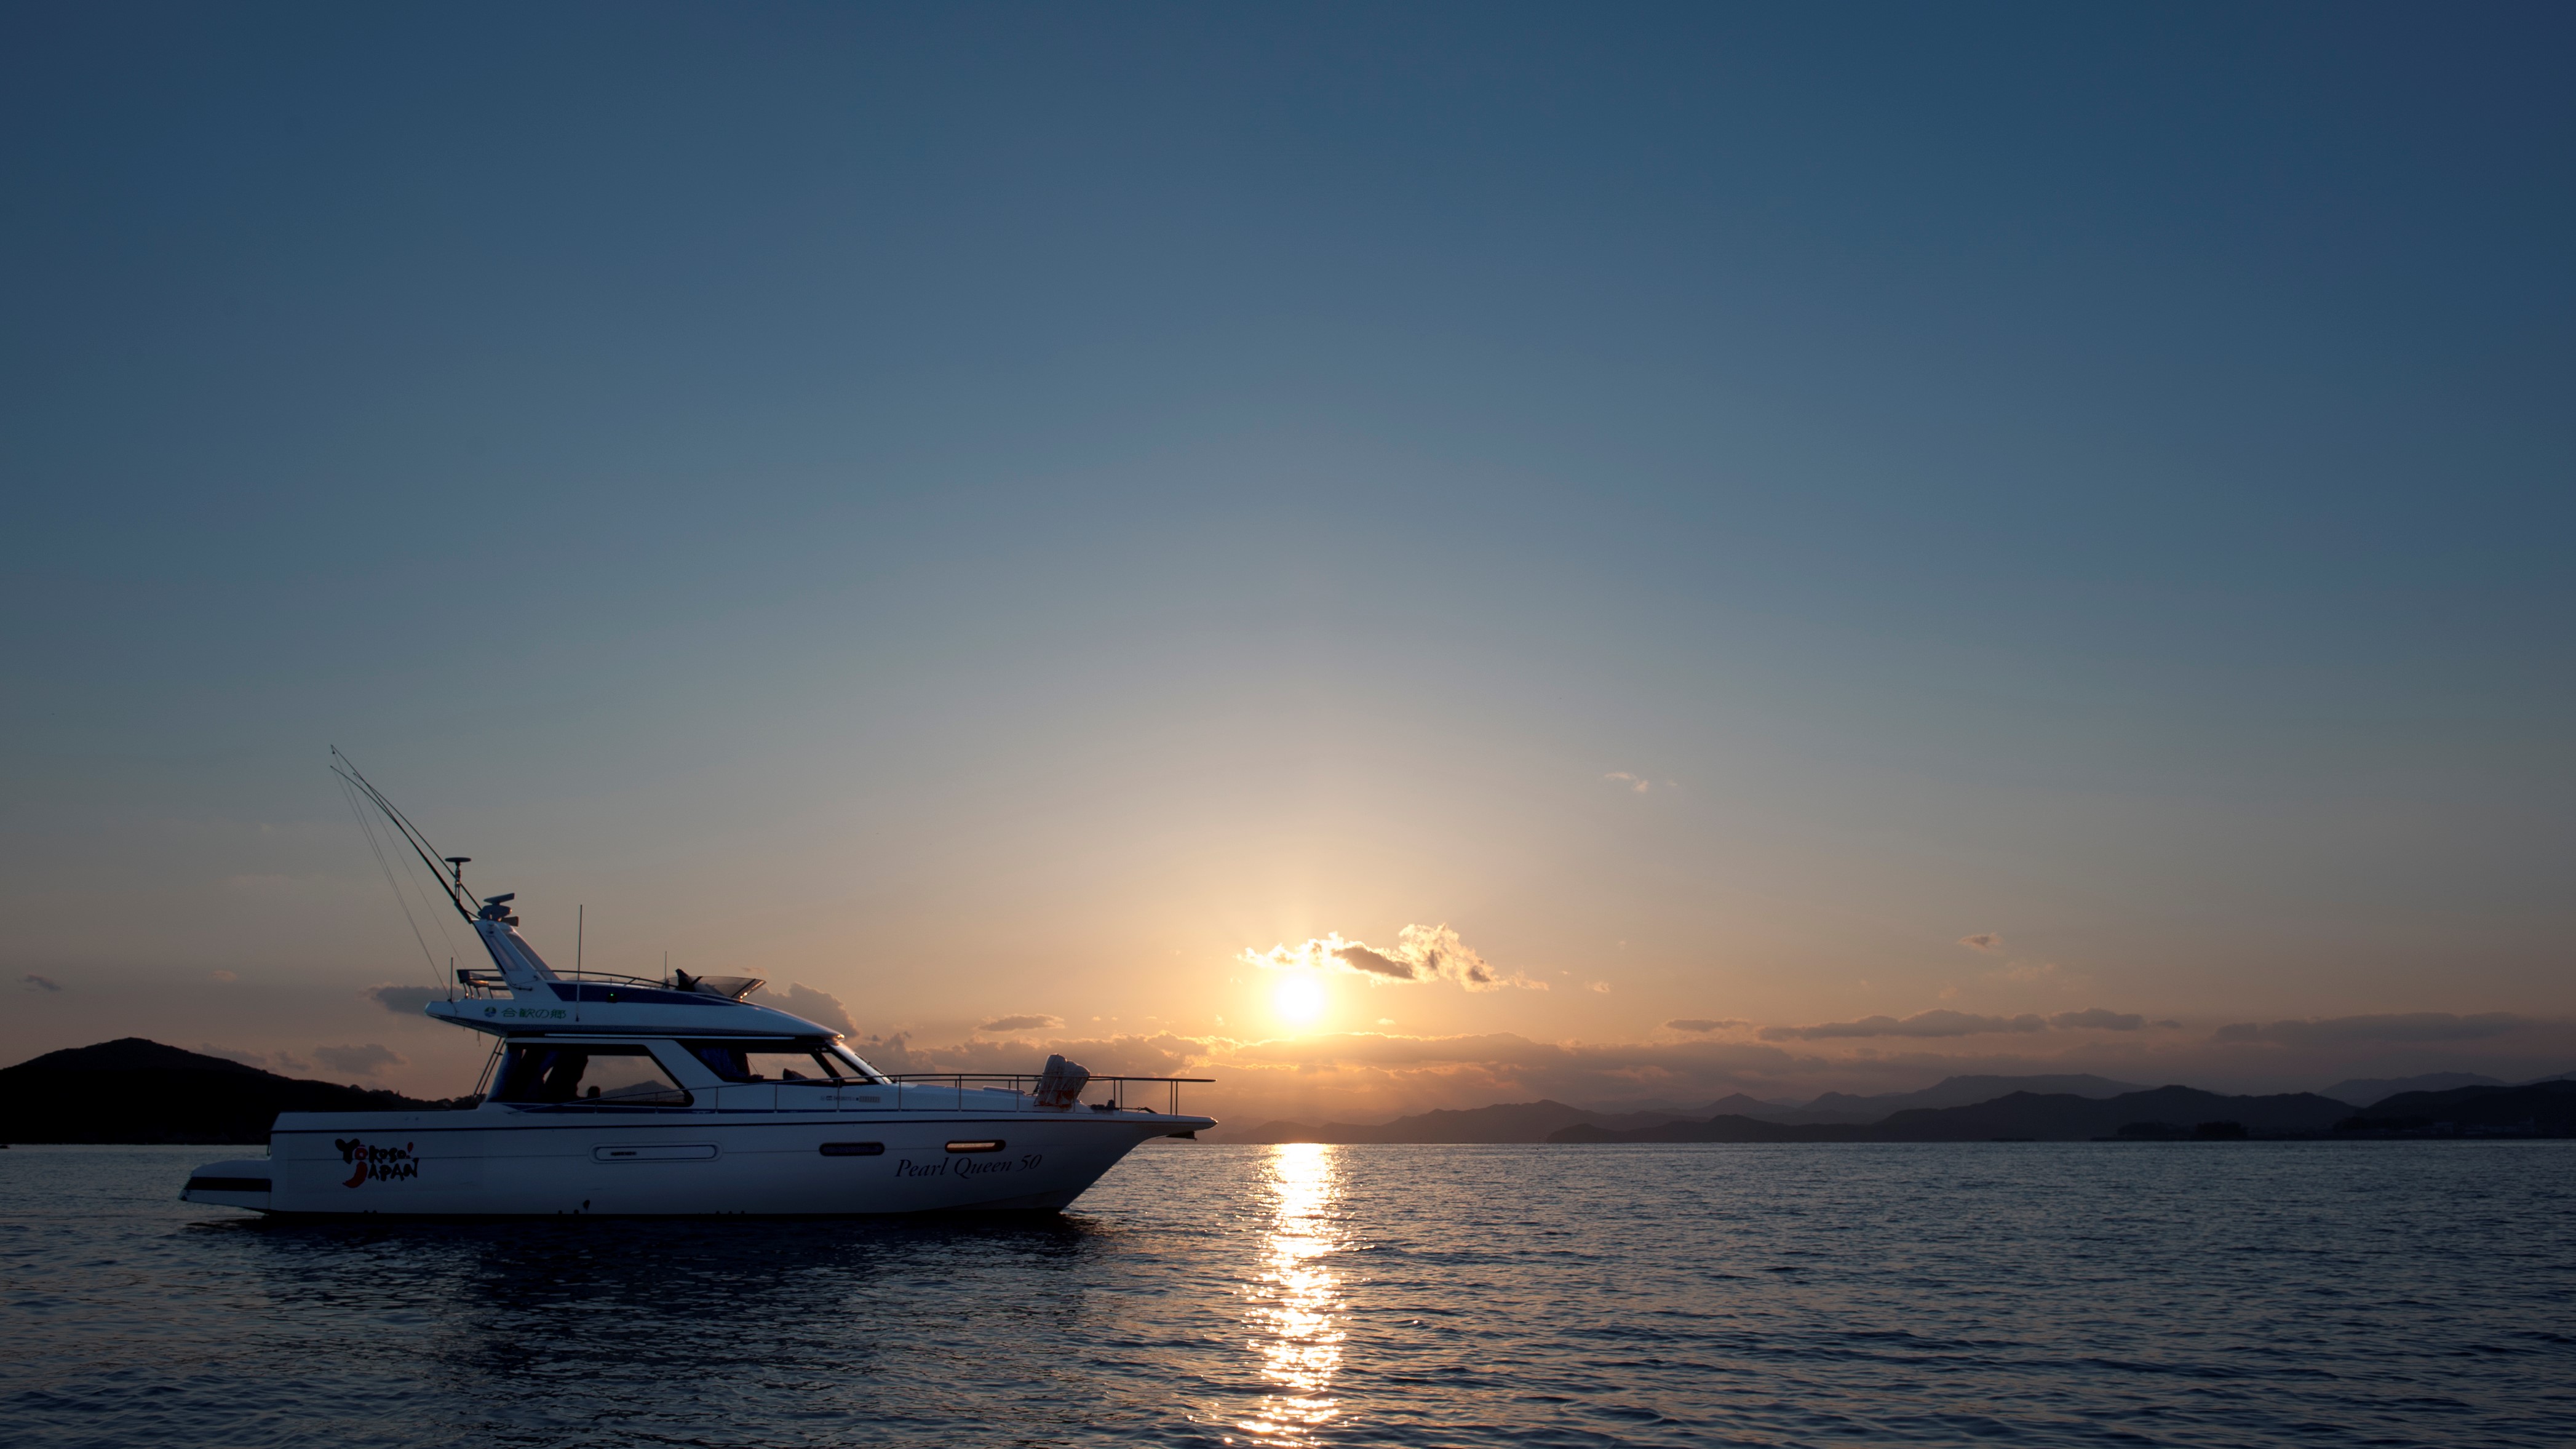 【サンセットクルージング】夕日に染まりゆく「あご湾」の景色を眺めながらクルージング